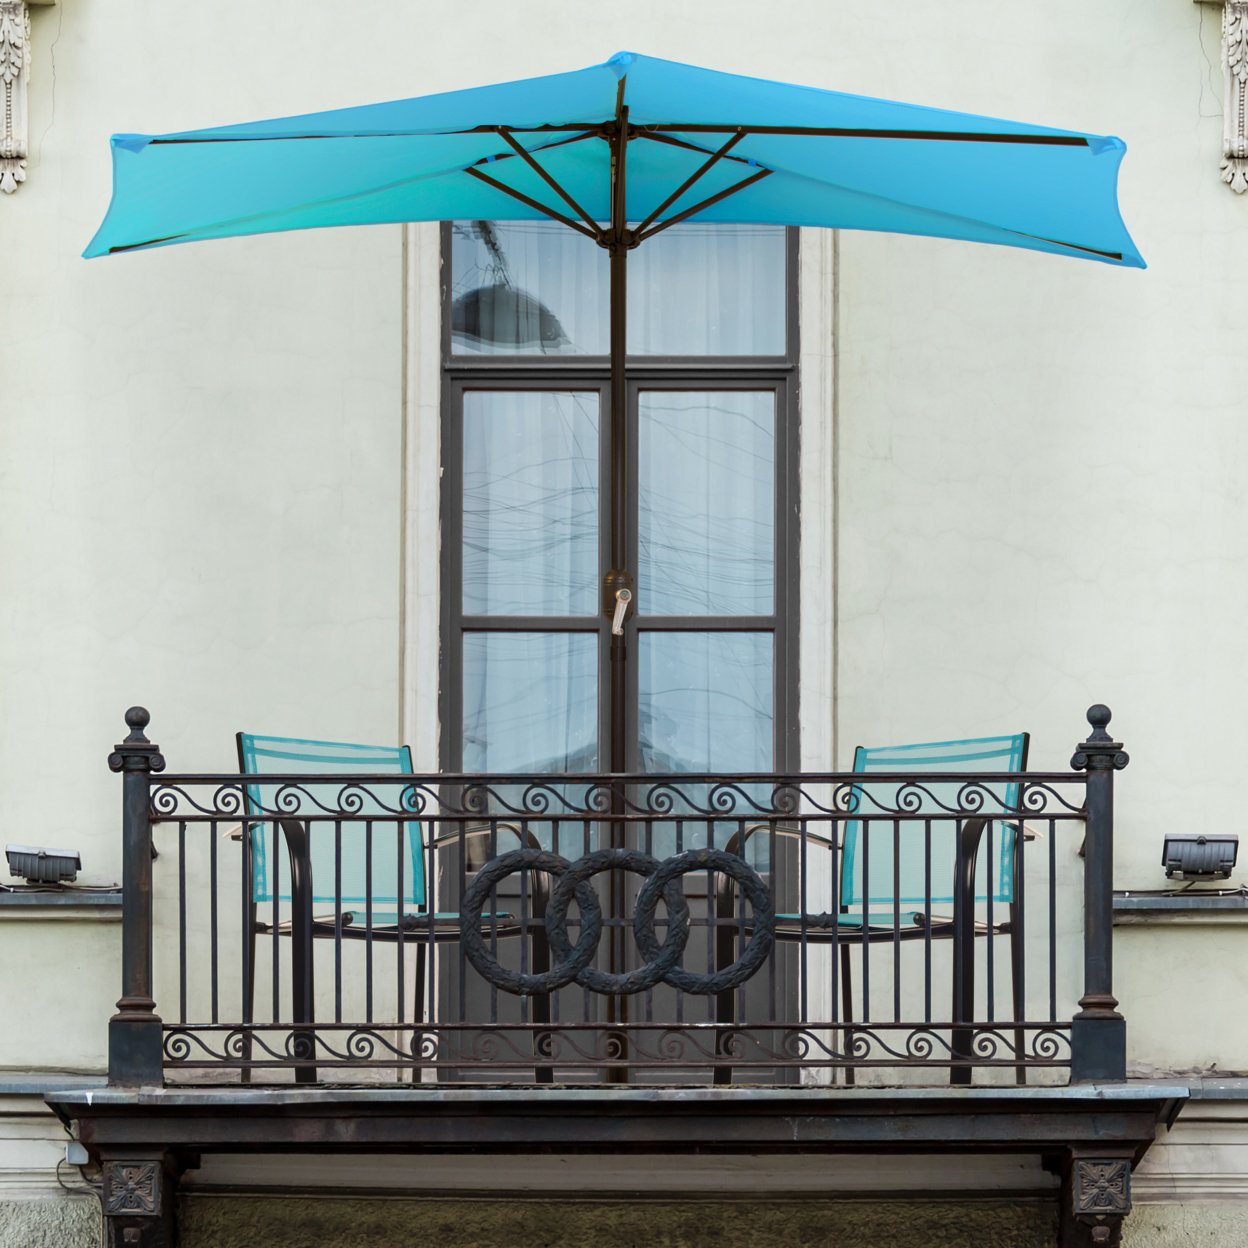 Half Round Patio Umbrella With Easy Crank- Small Space Outdoor Shade Umbrella Blue